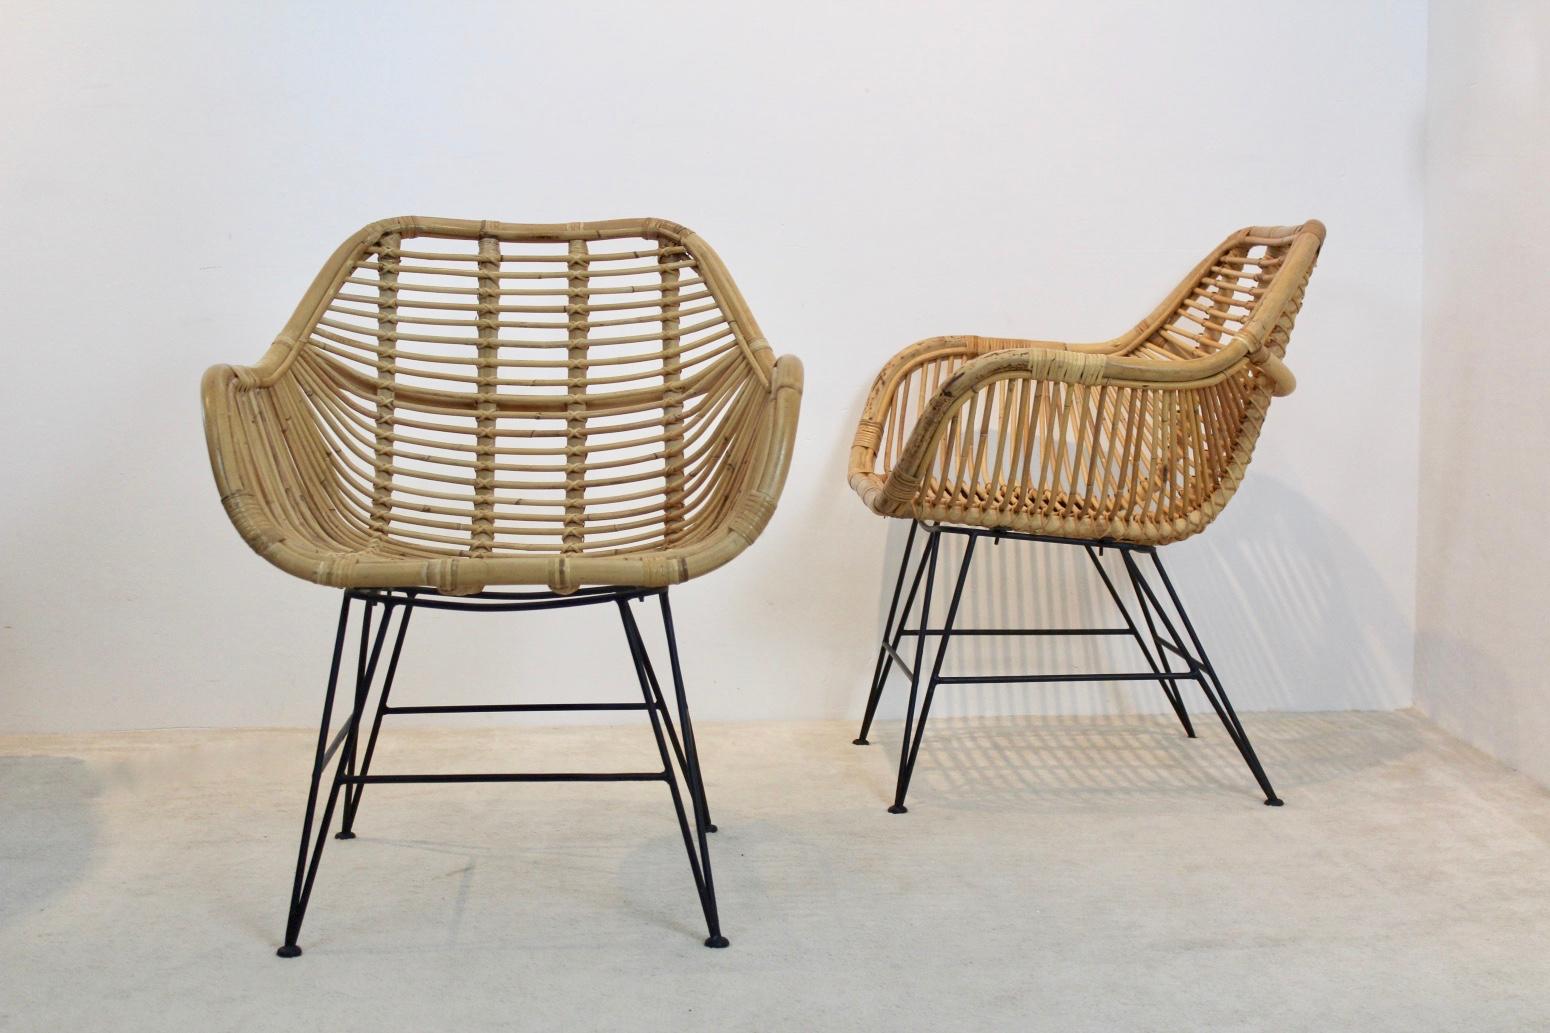 Schönes Set aus zwei Korbstühlen mit einem raffinierten Stahlgestell, hergestellt in den Niederlanden. Die Stühle bestehen aus wunderschön gestaltetem Rattan mit linearen Details im Stil von Franco Albini. Sehr guter Originalzustand.